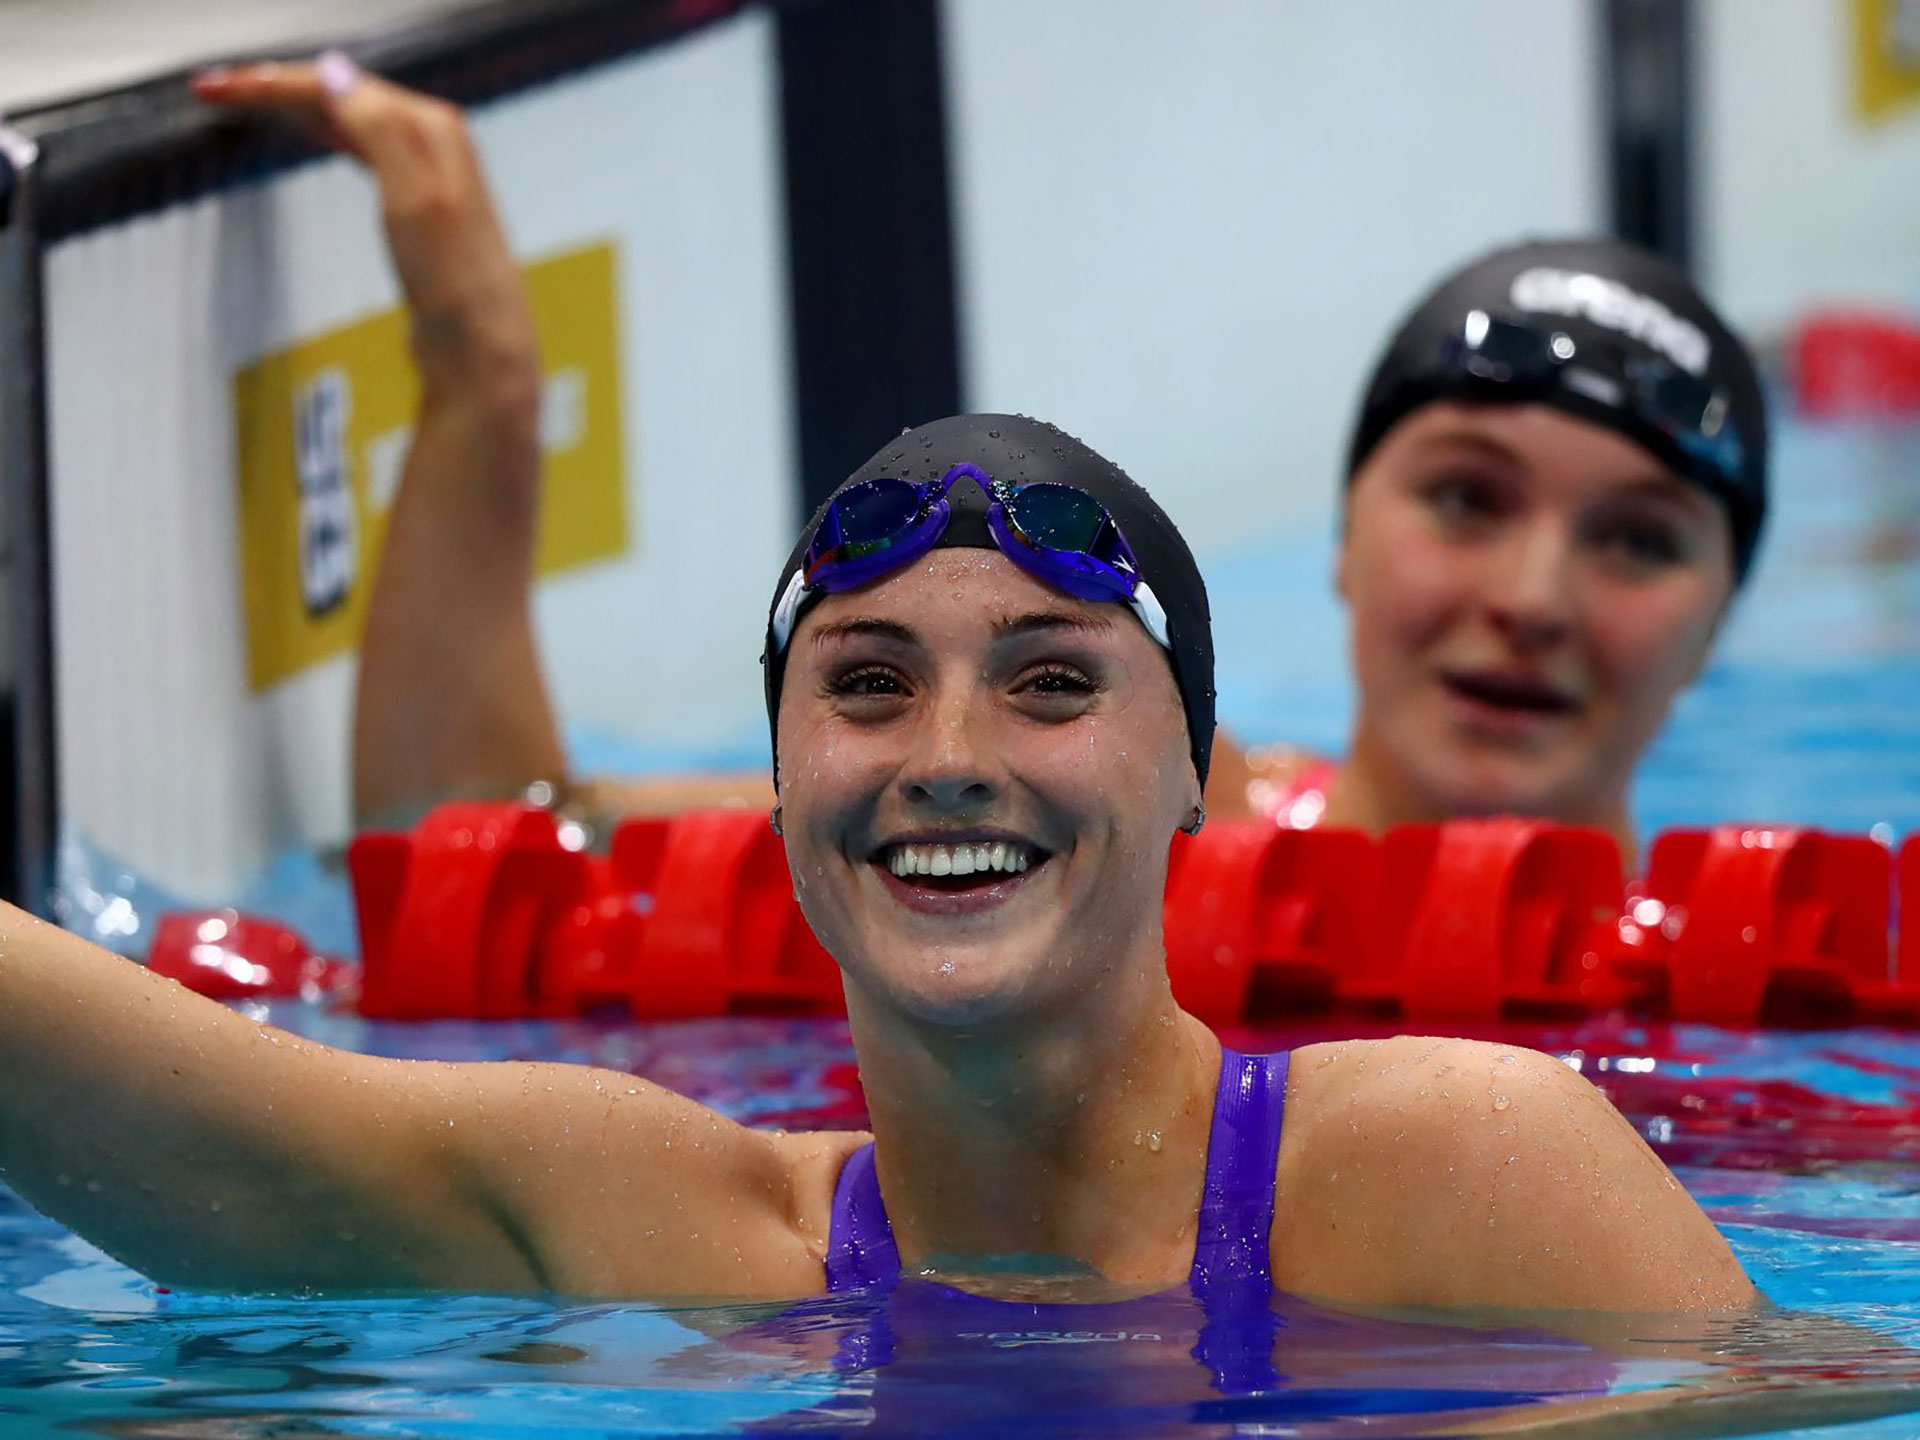 Molly Reinshaw, nadadora británica, en las pruebas de selección de natación británicas de Tokio 2020.  (Getty Images)